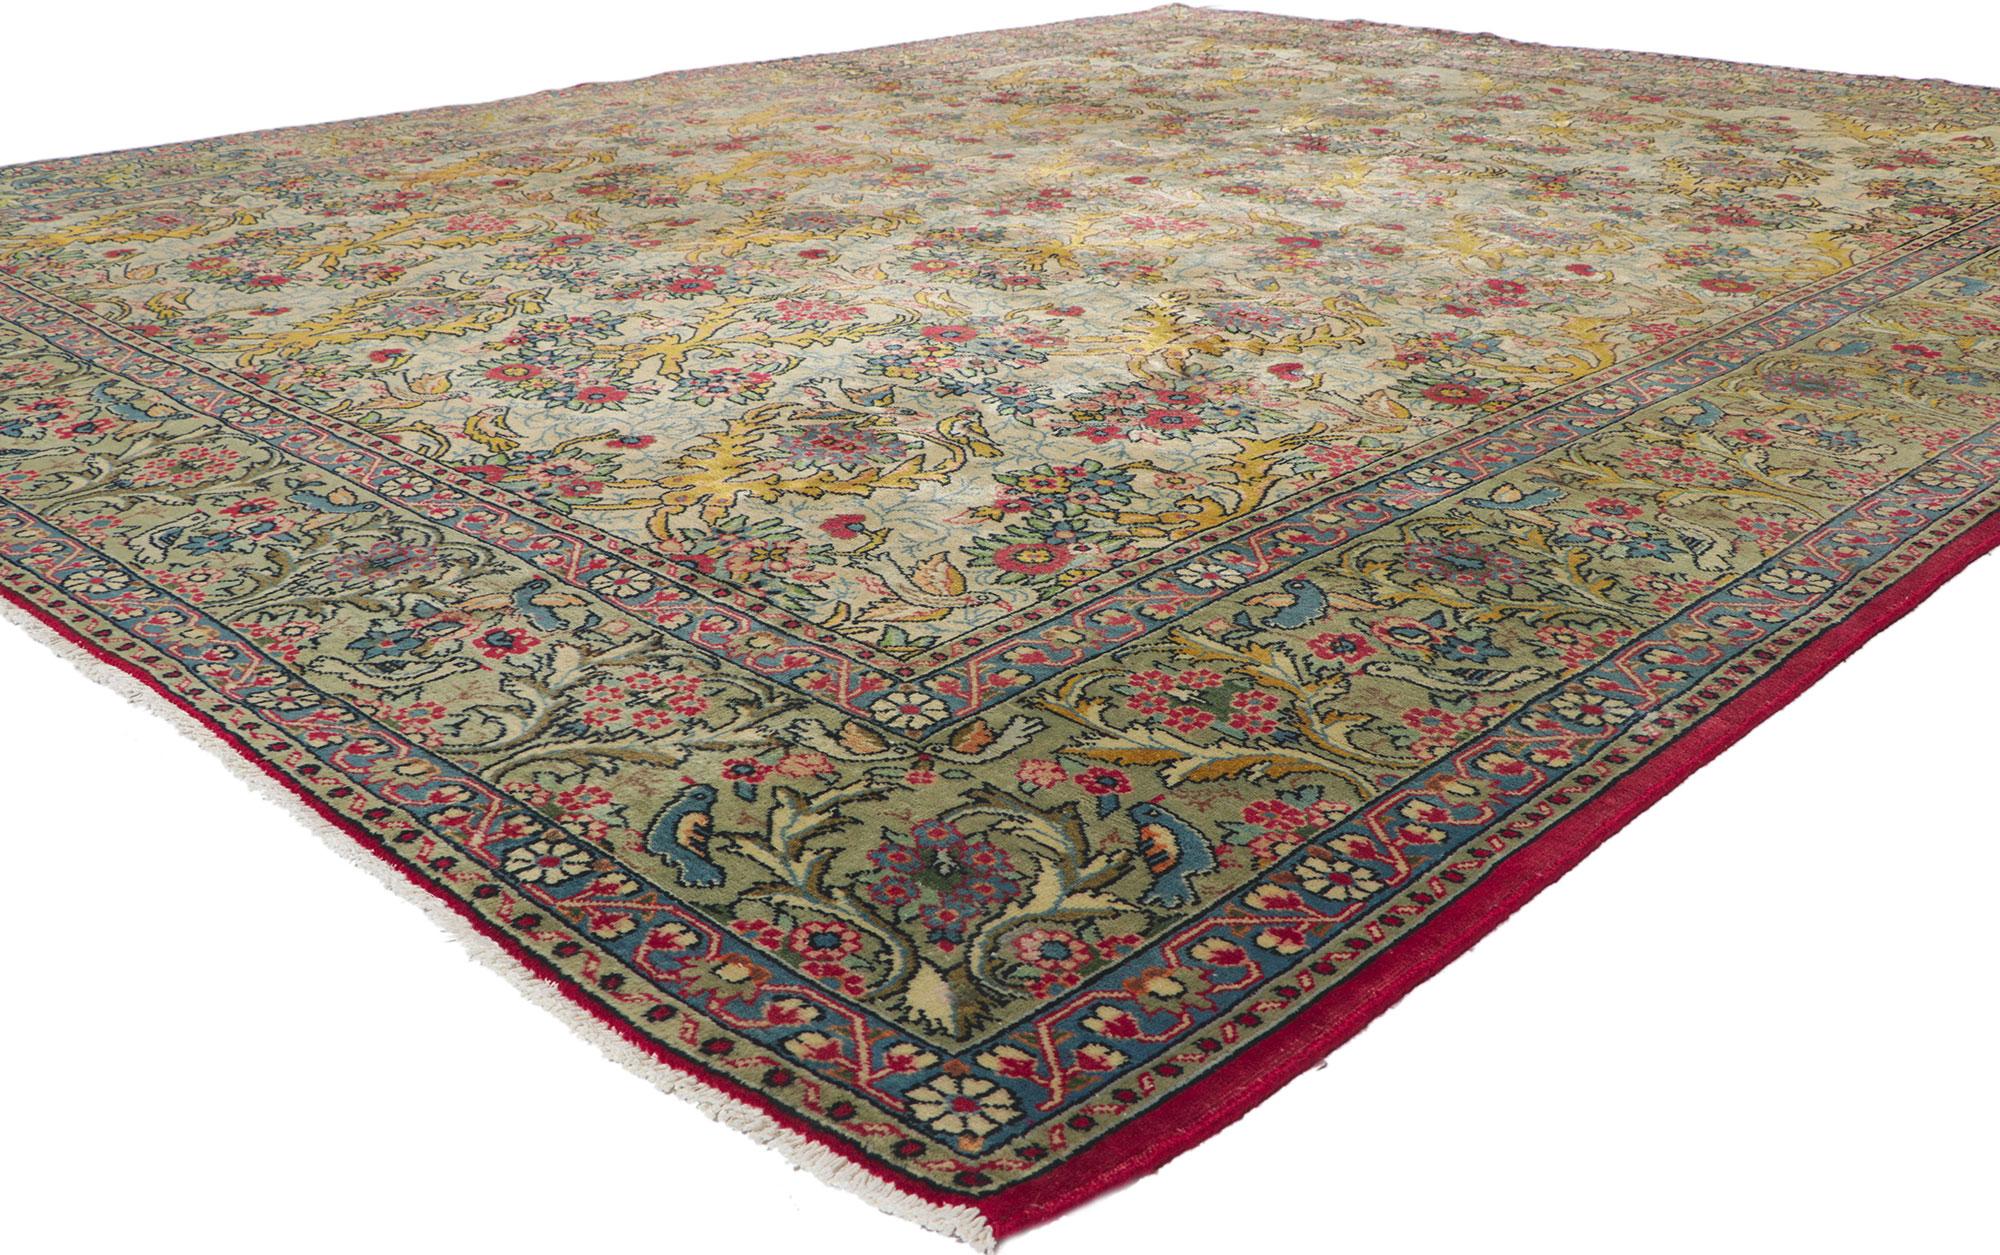 61126 Vintage Persisch Tabriz Teppich, 09'10 x 12'00. Dieser handgeknüpfte persische Tabriz-Teppich aus Wolle im Vintage-Stil besticht durch sein zeitloses Design und seine mühelose Schönheit. Das auffällige botanische Gitter und die verträumte